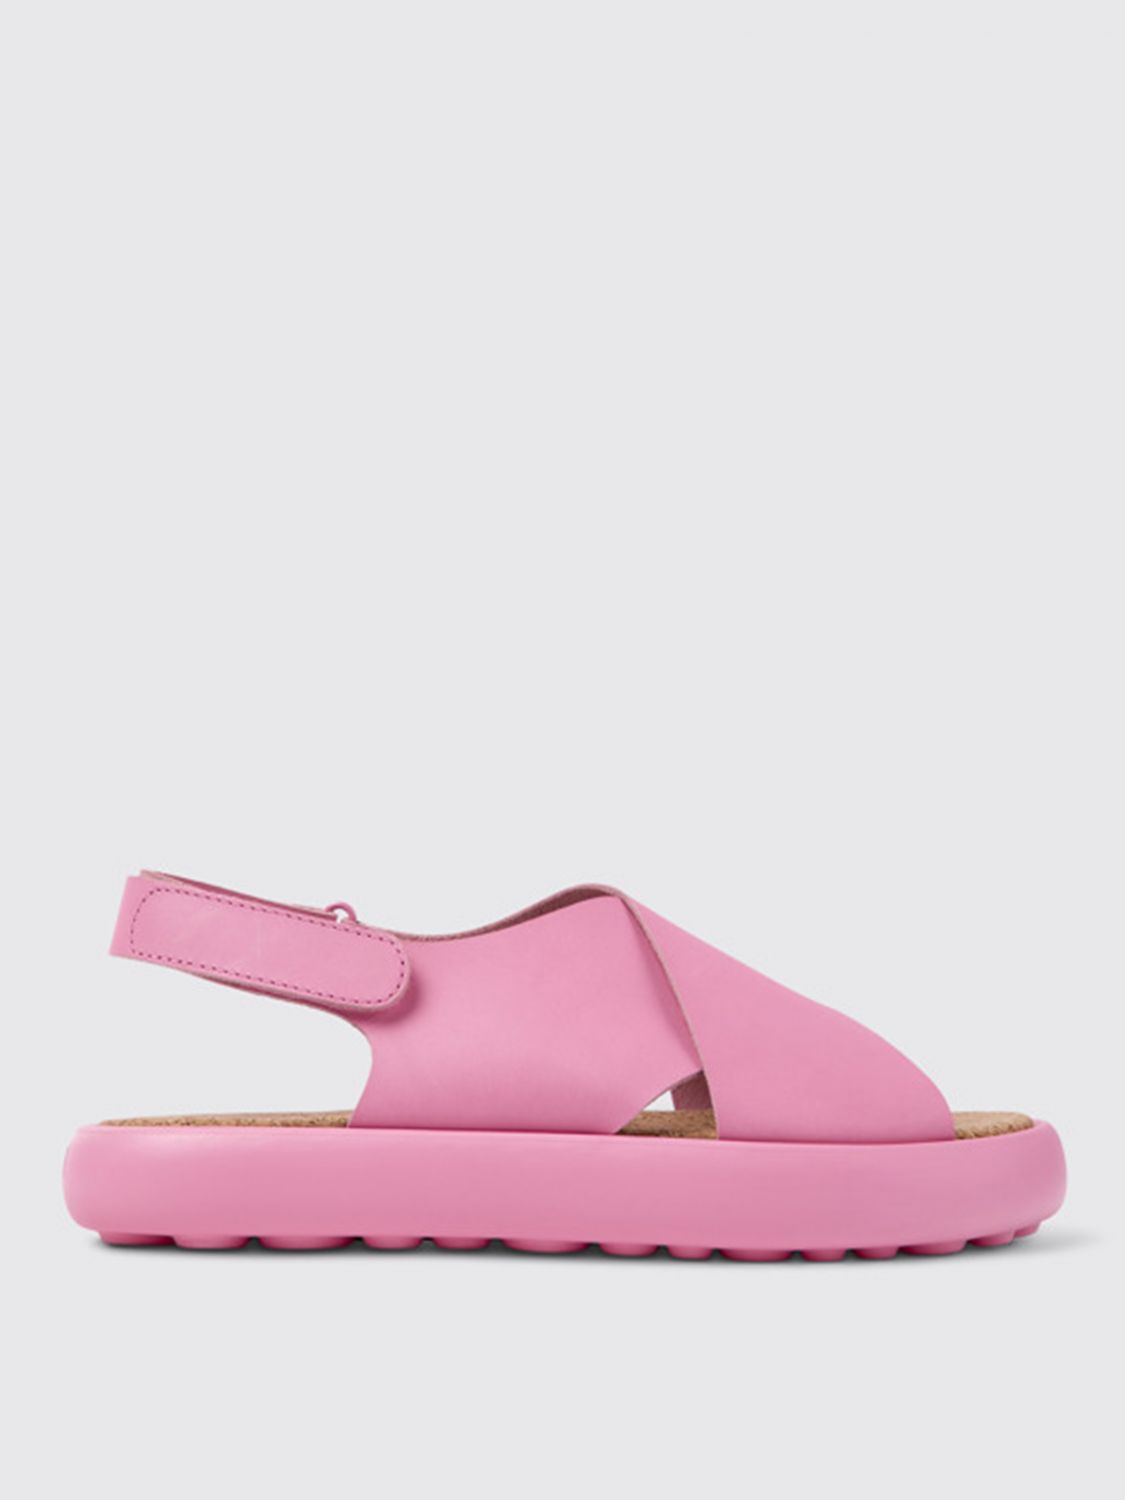 CAMPER: Pelotas Flota sandals in leather - Pink | Camper sandals ...